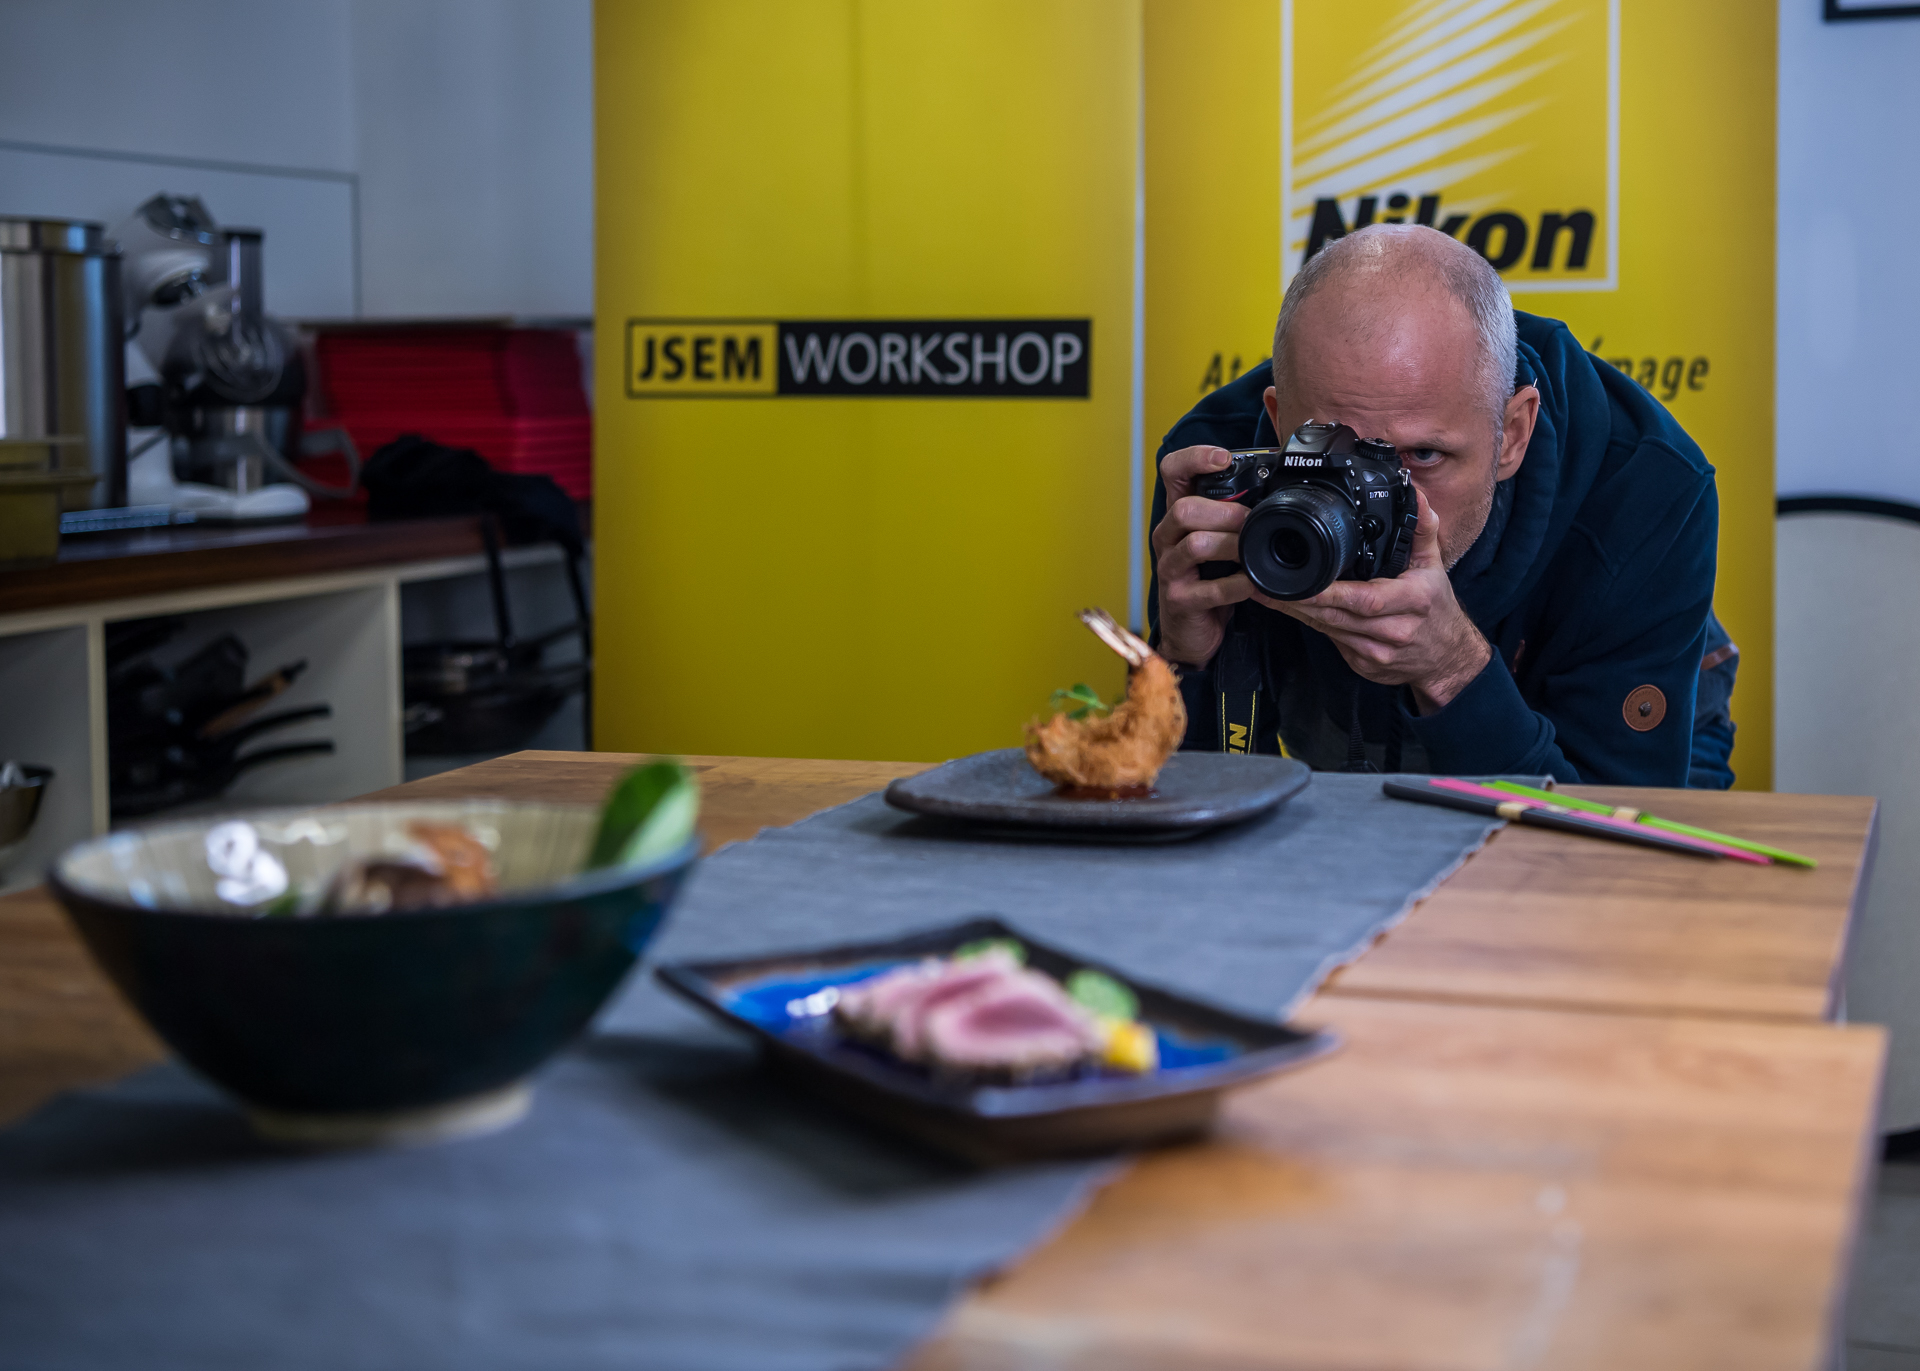 Nikon škola – Fotografování jídla a foodstyling